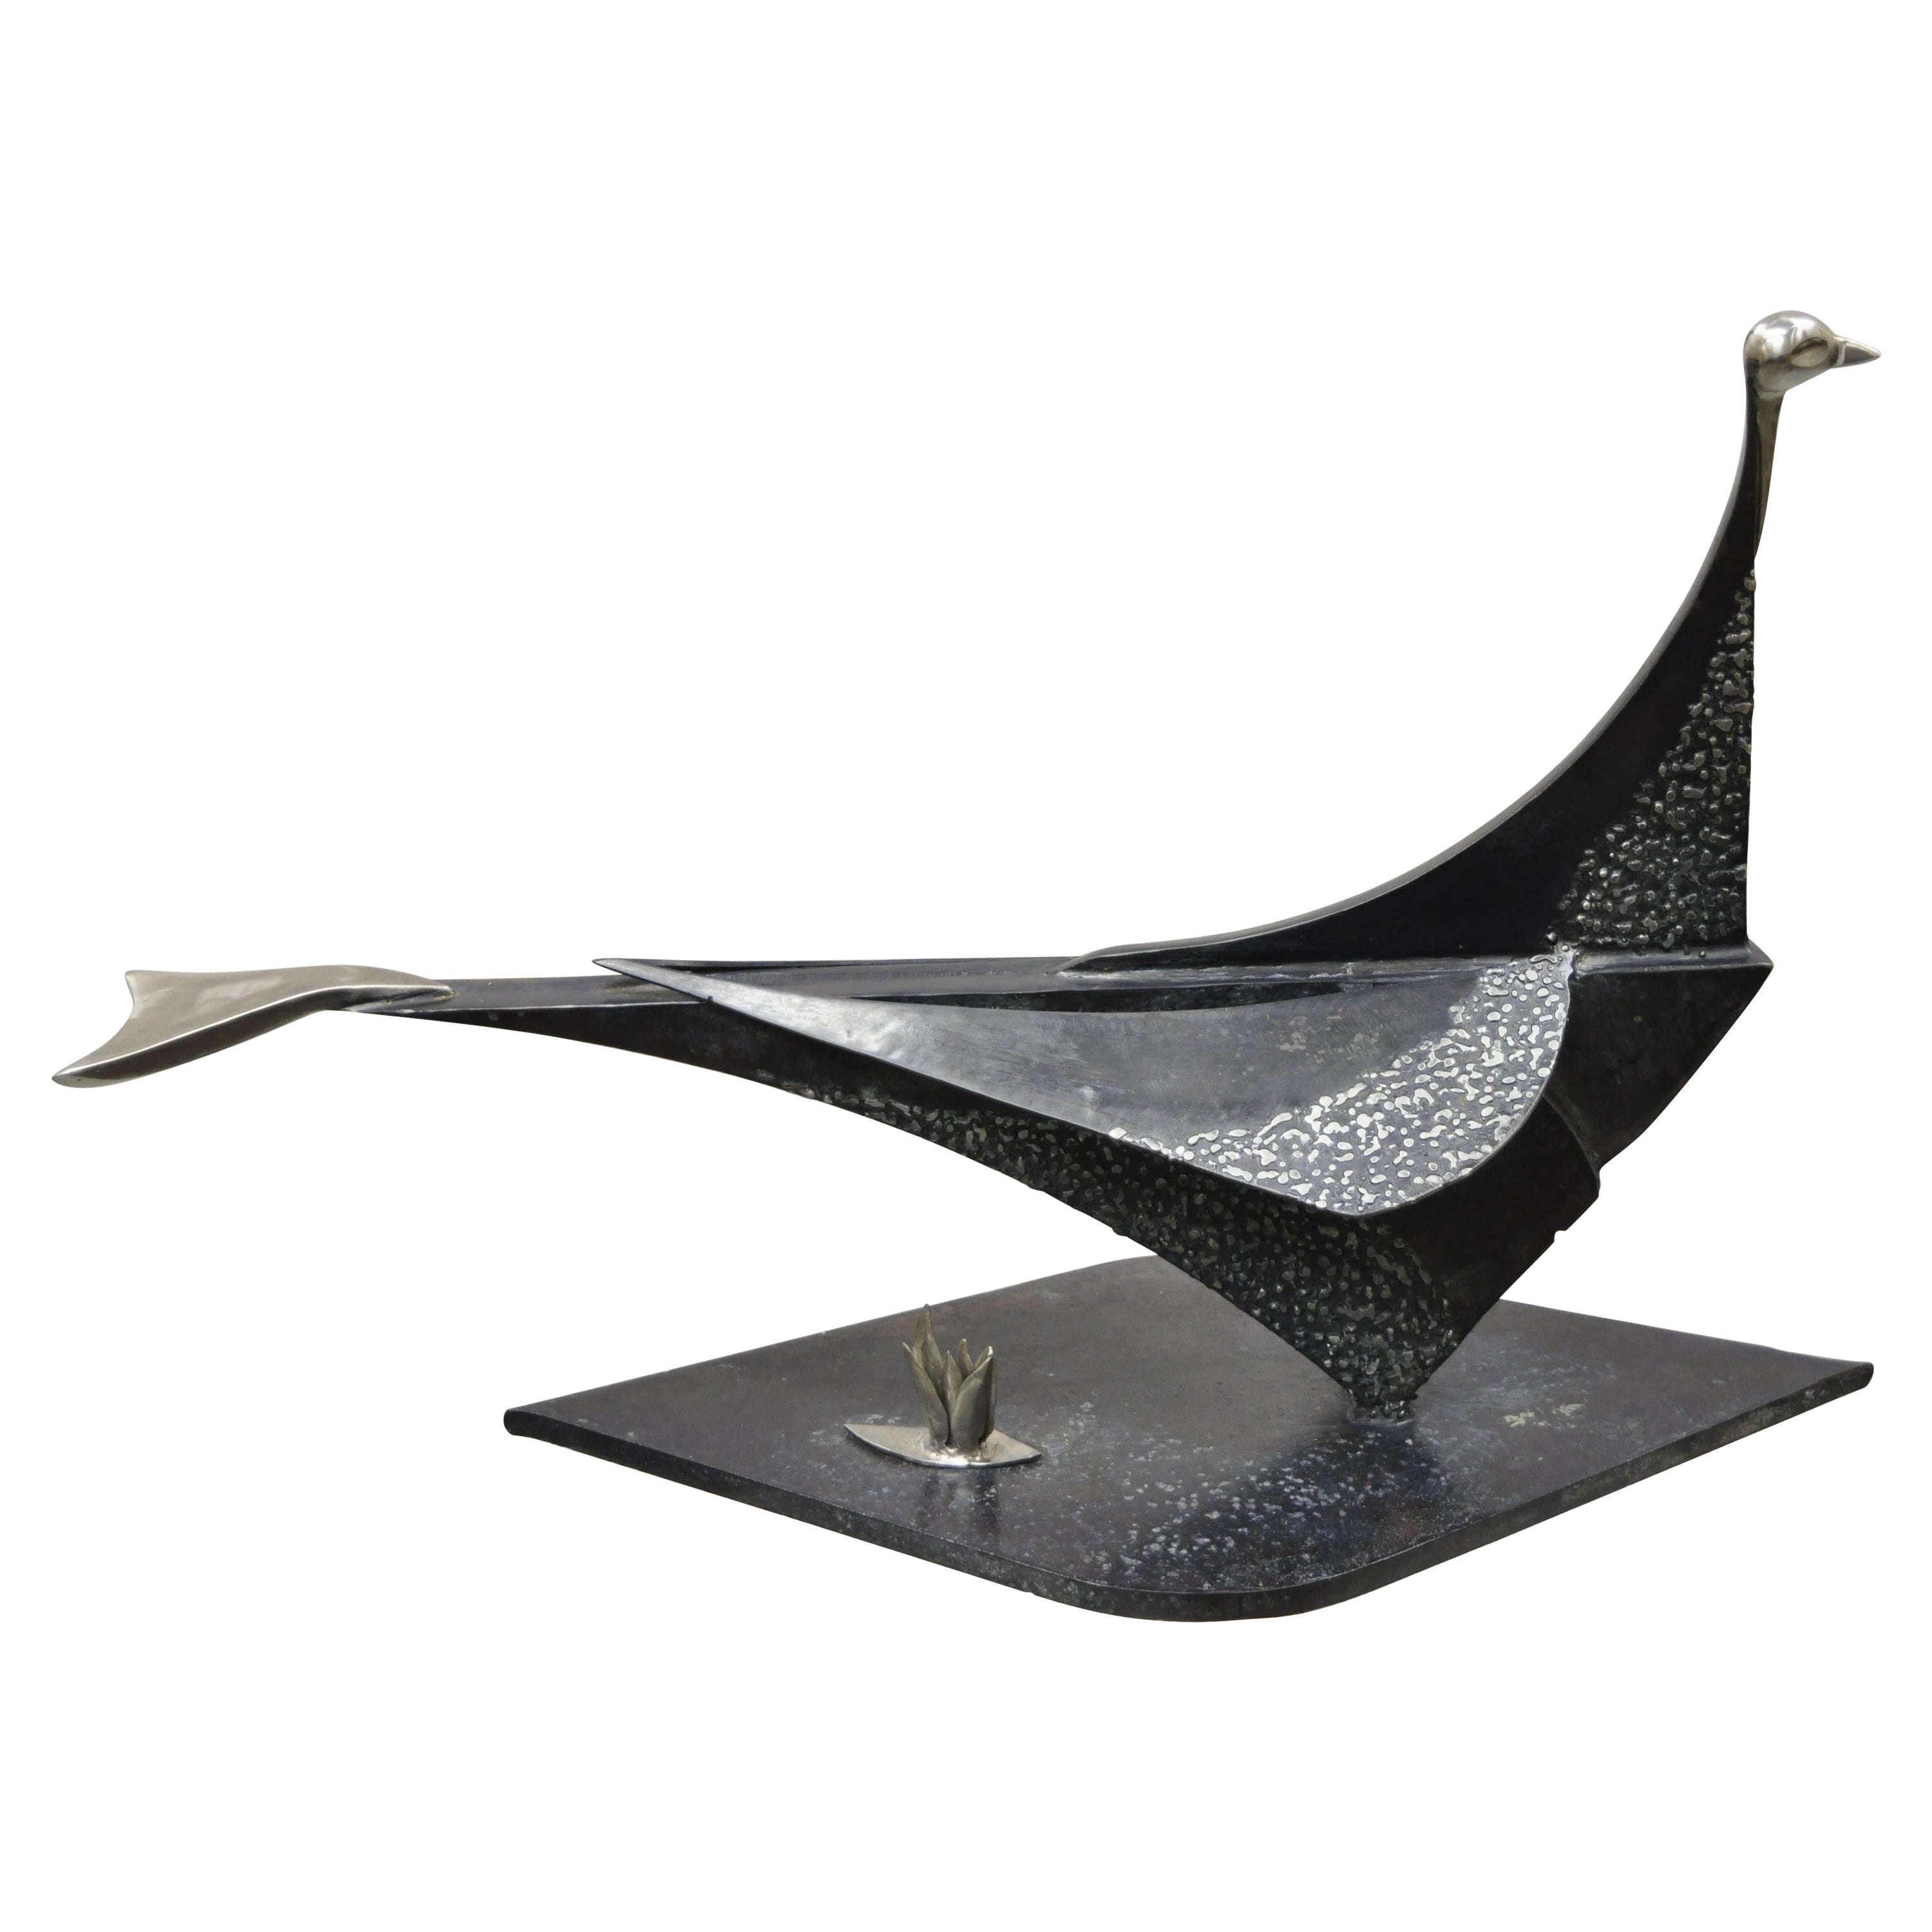 Grande sculpture d'oiseau brutaliste moderne en métal et acier, artiste métallique